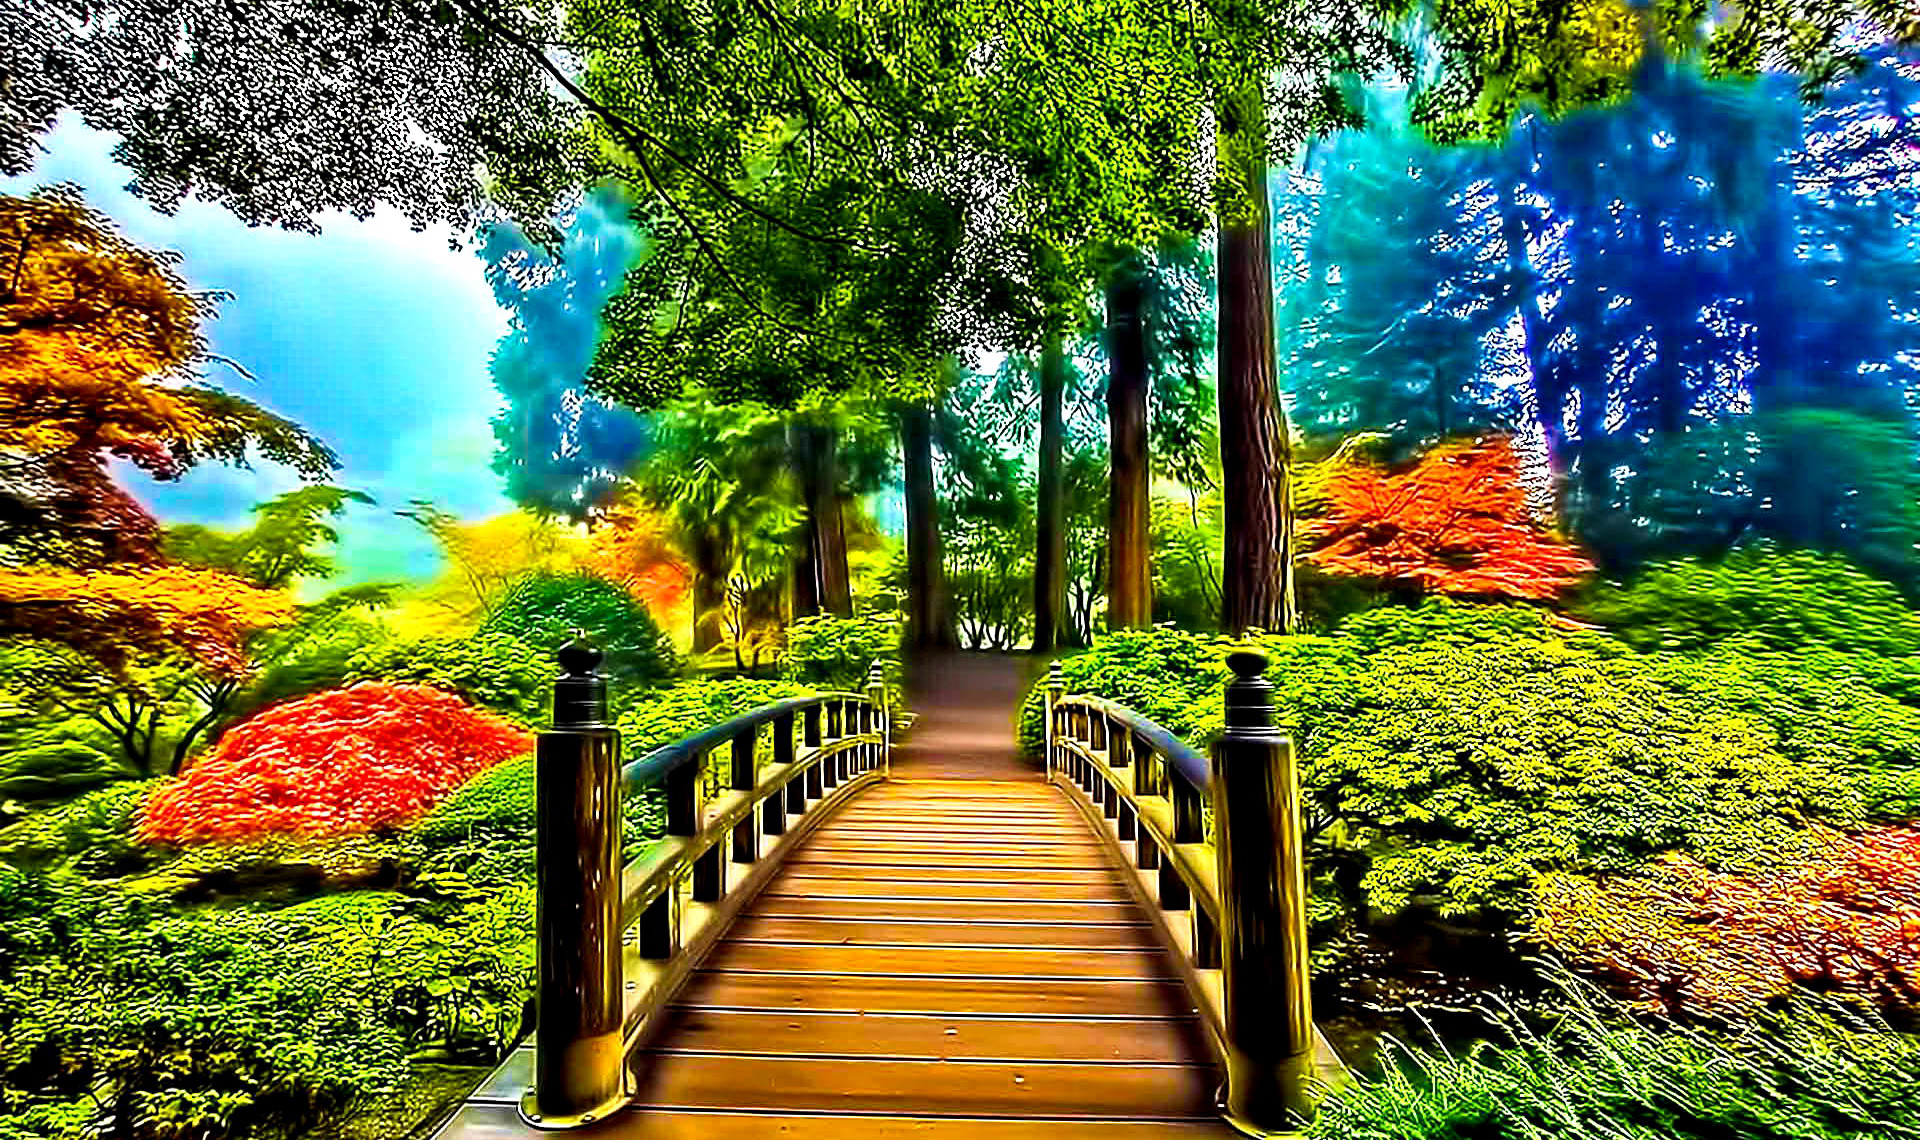 natural images hd wallpaper desktop background,natural landscape,nature,tree,green,vegetation